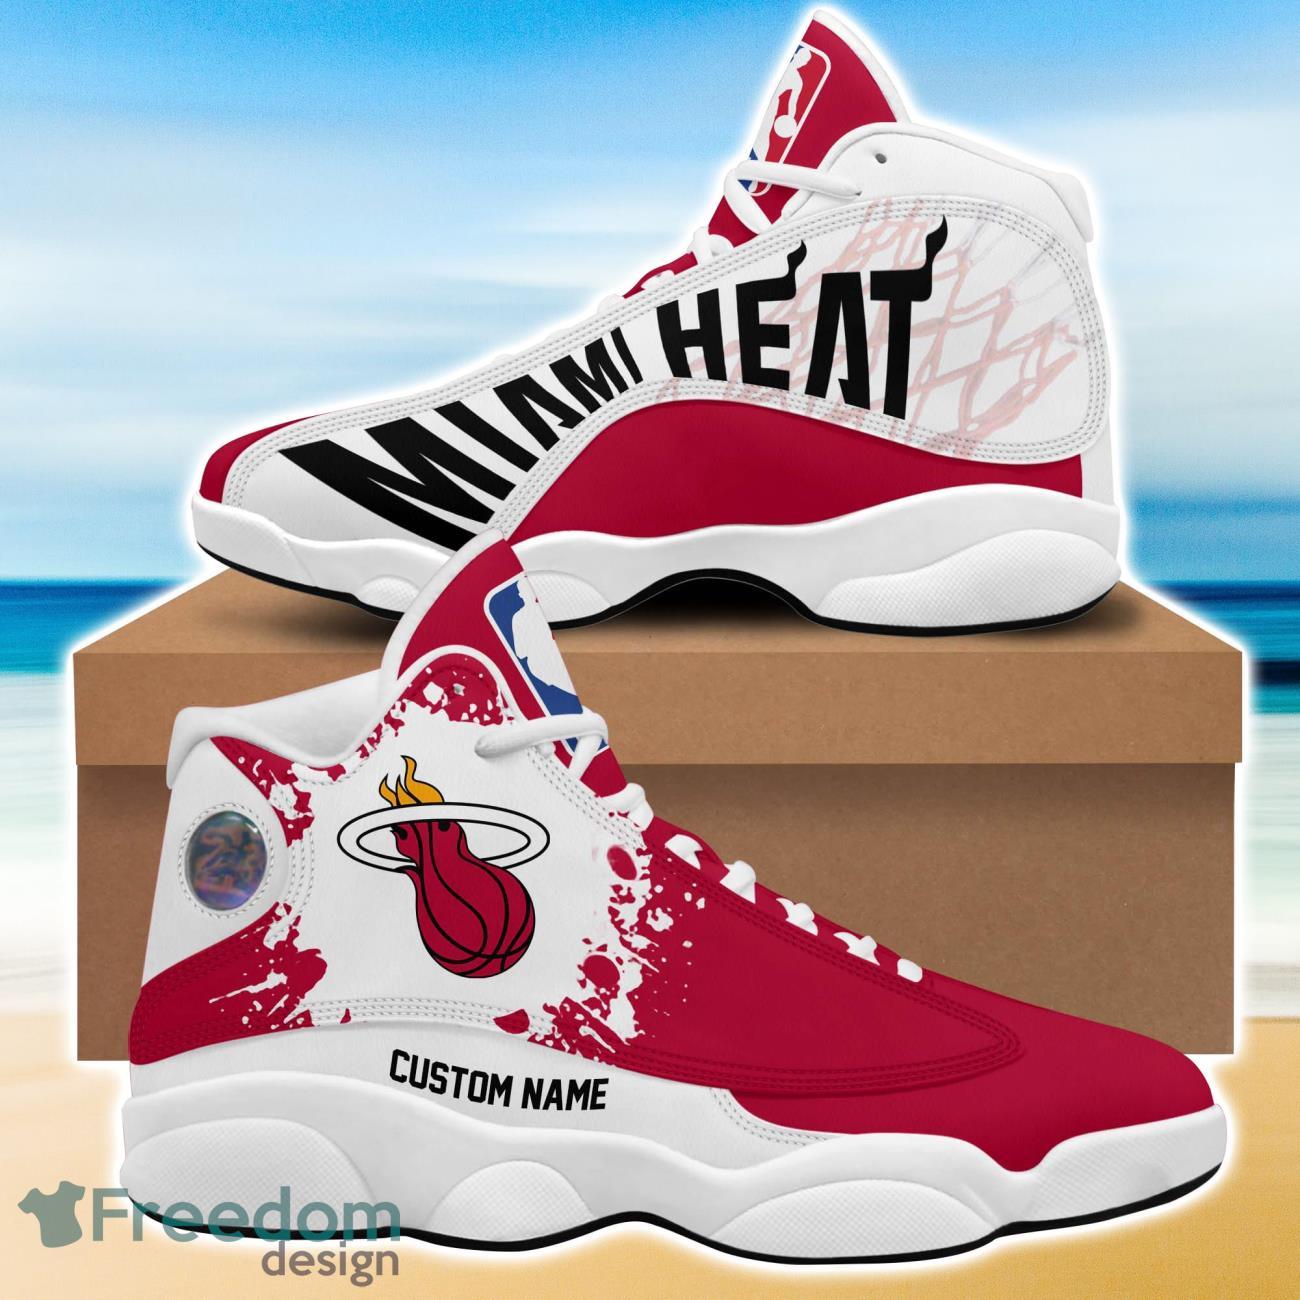 NBA Miami Heat Jordan Air Jordan 13 Custom Name Shoes - Freedomdesign